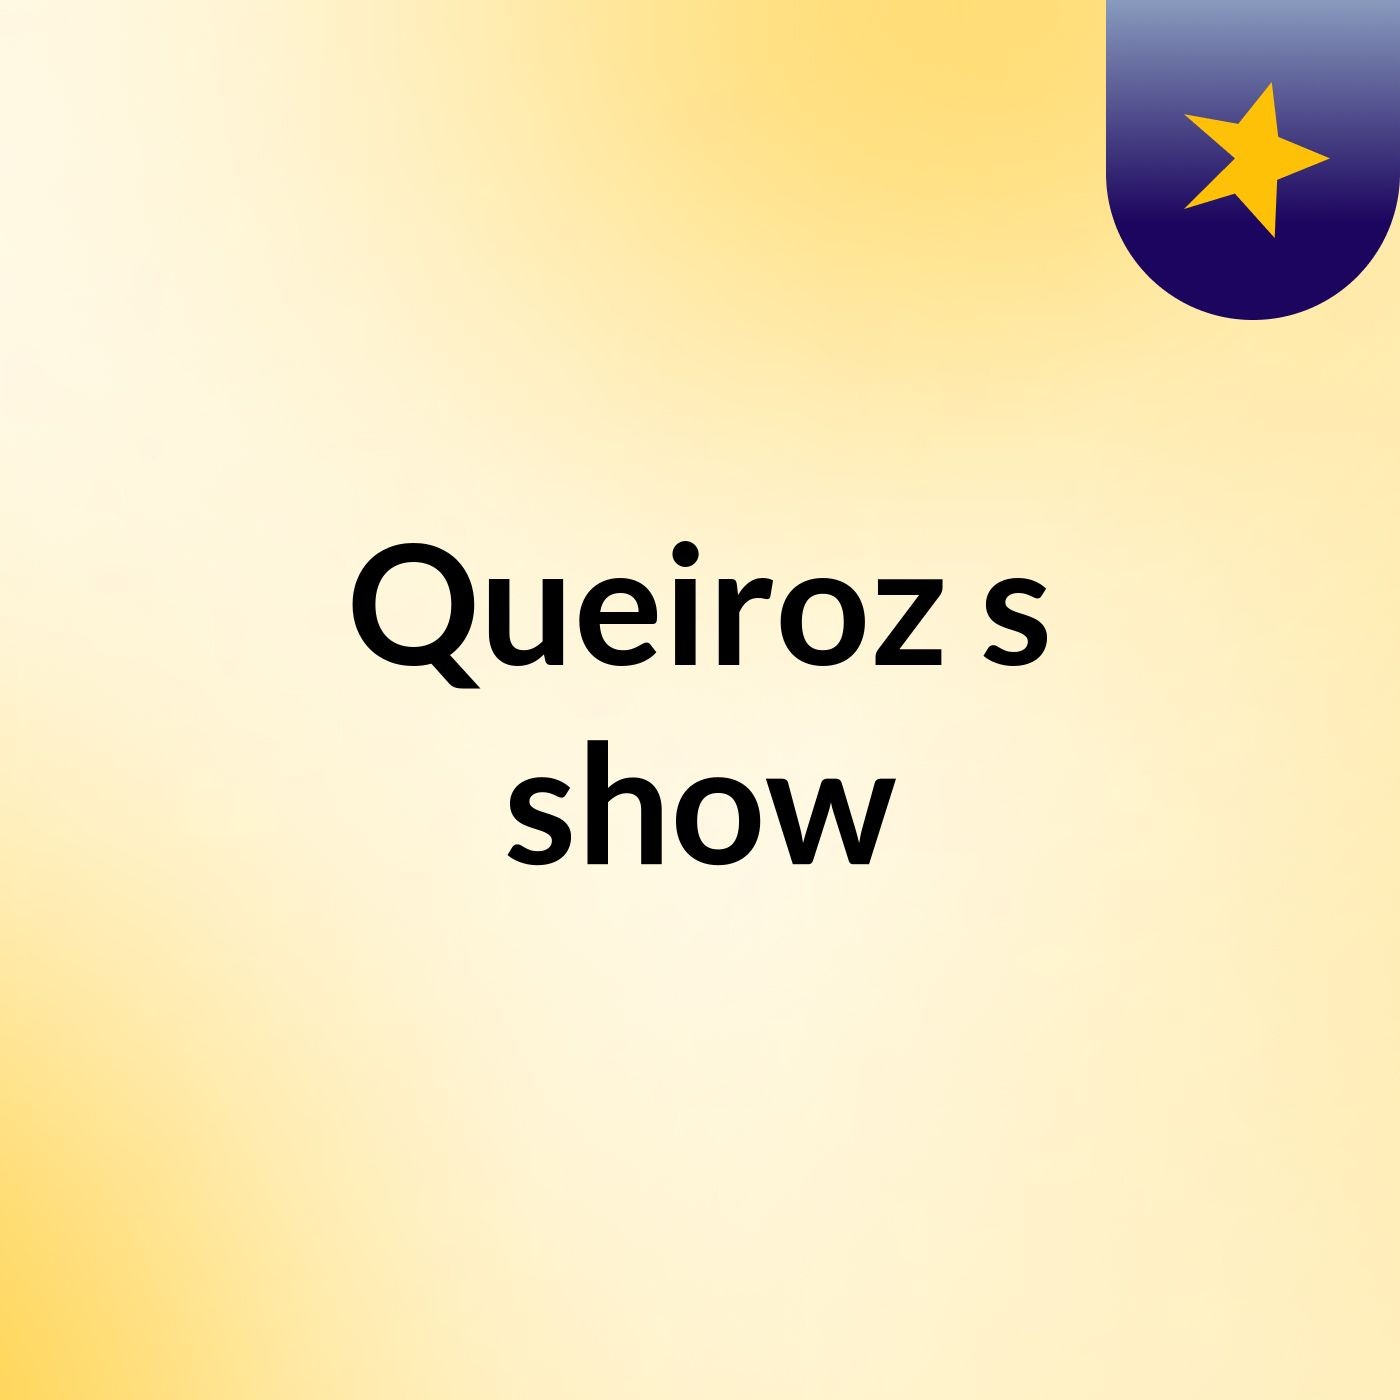 Queiroz's show